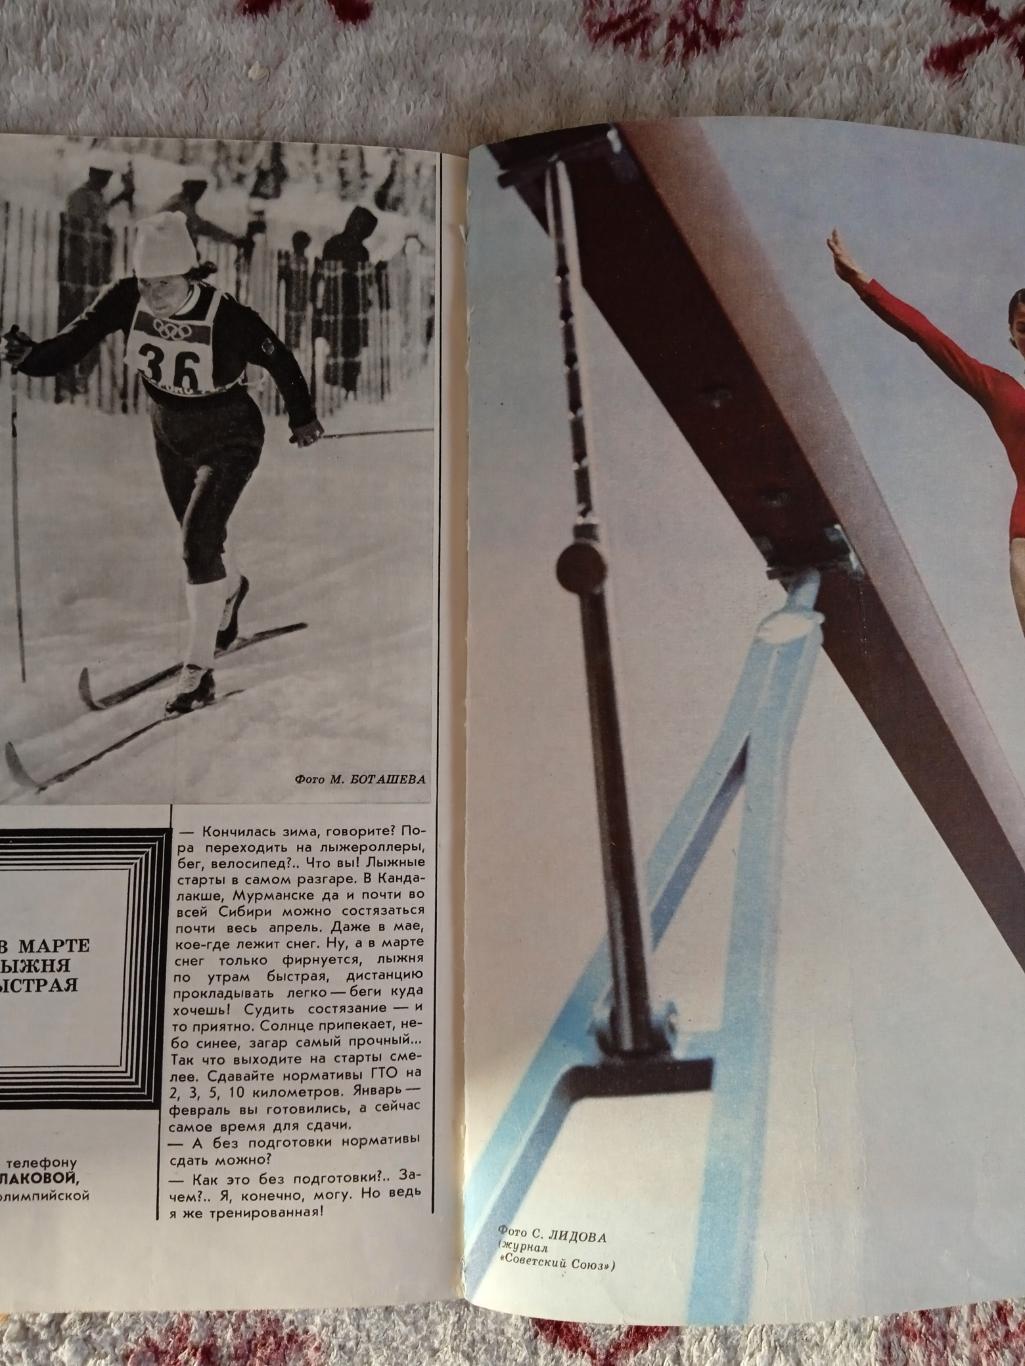 Журнал.Физкультура и спорт № 3 1973 г. (ФиС). 3